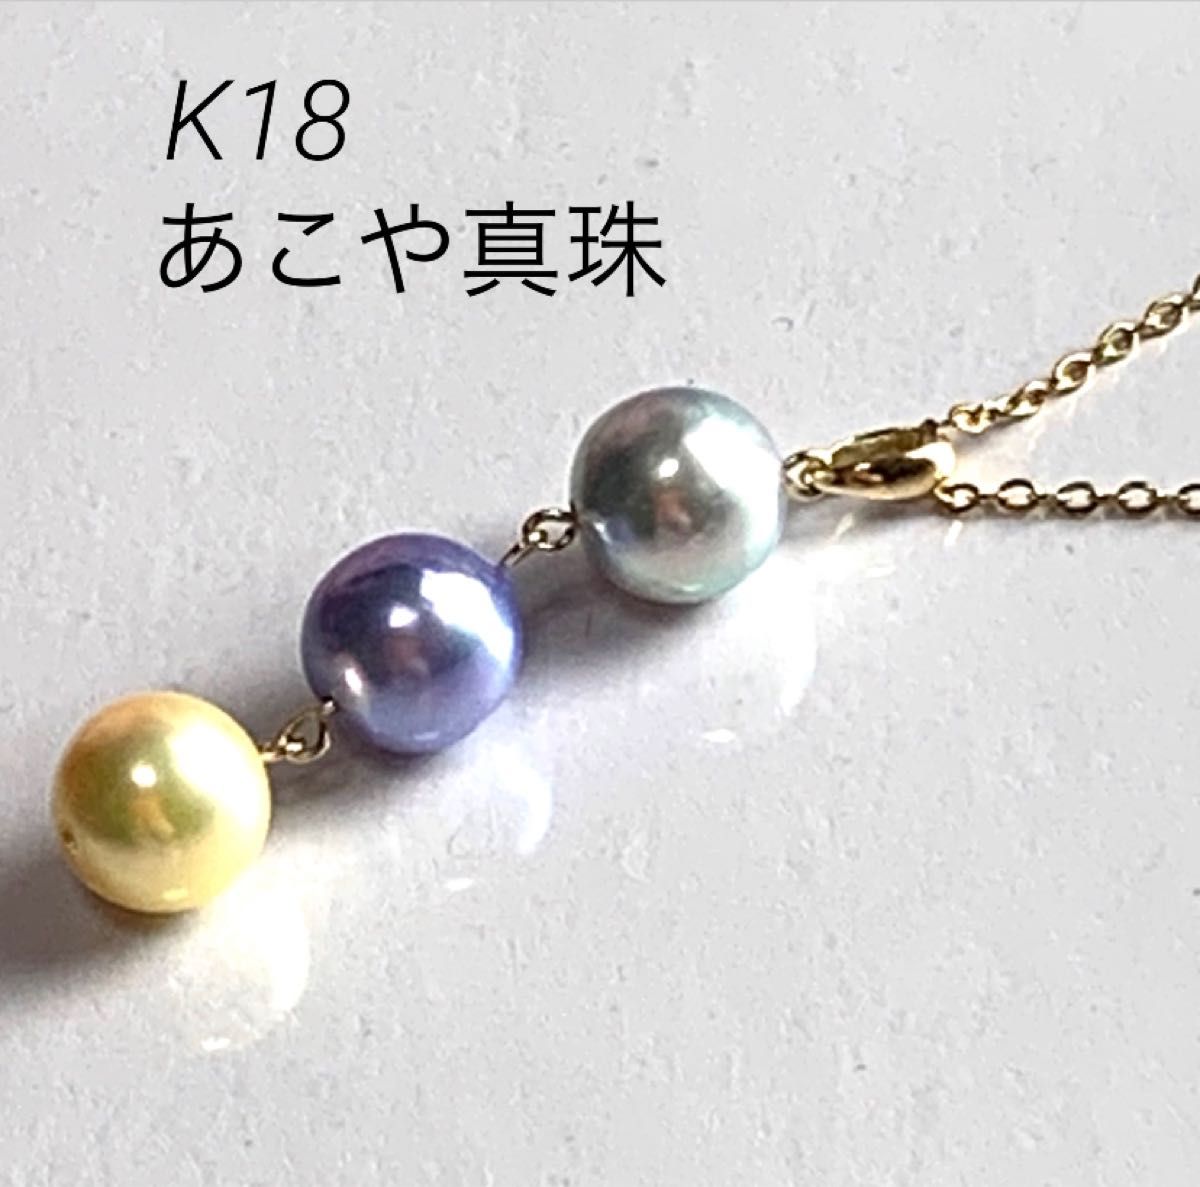 宝石店企画商品 K18高品質 あこや真珠 マルチカラー3連ペンダントトップ サーピスチェーン付き 日本製